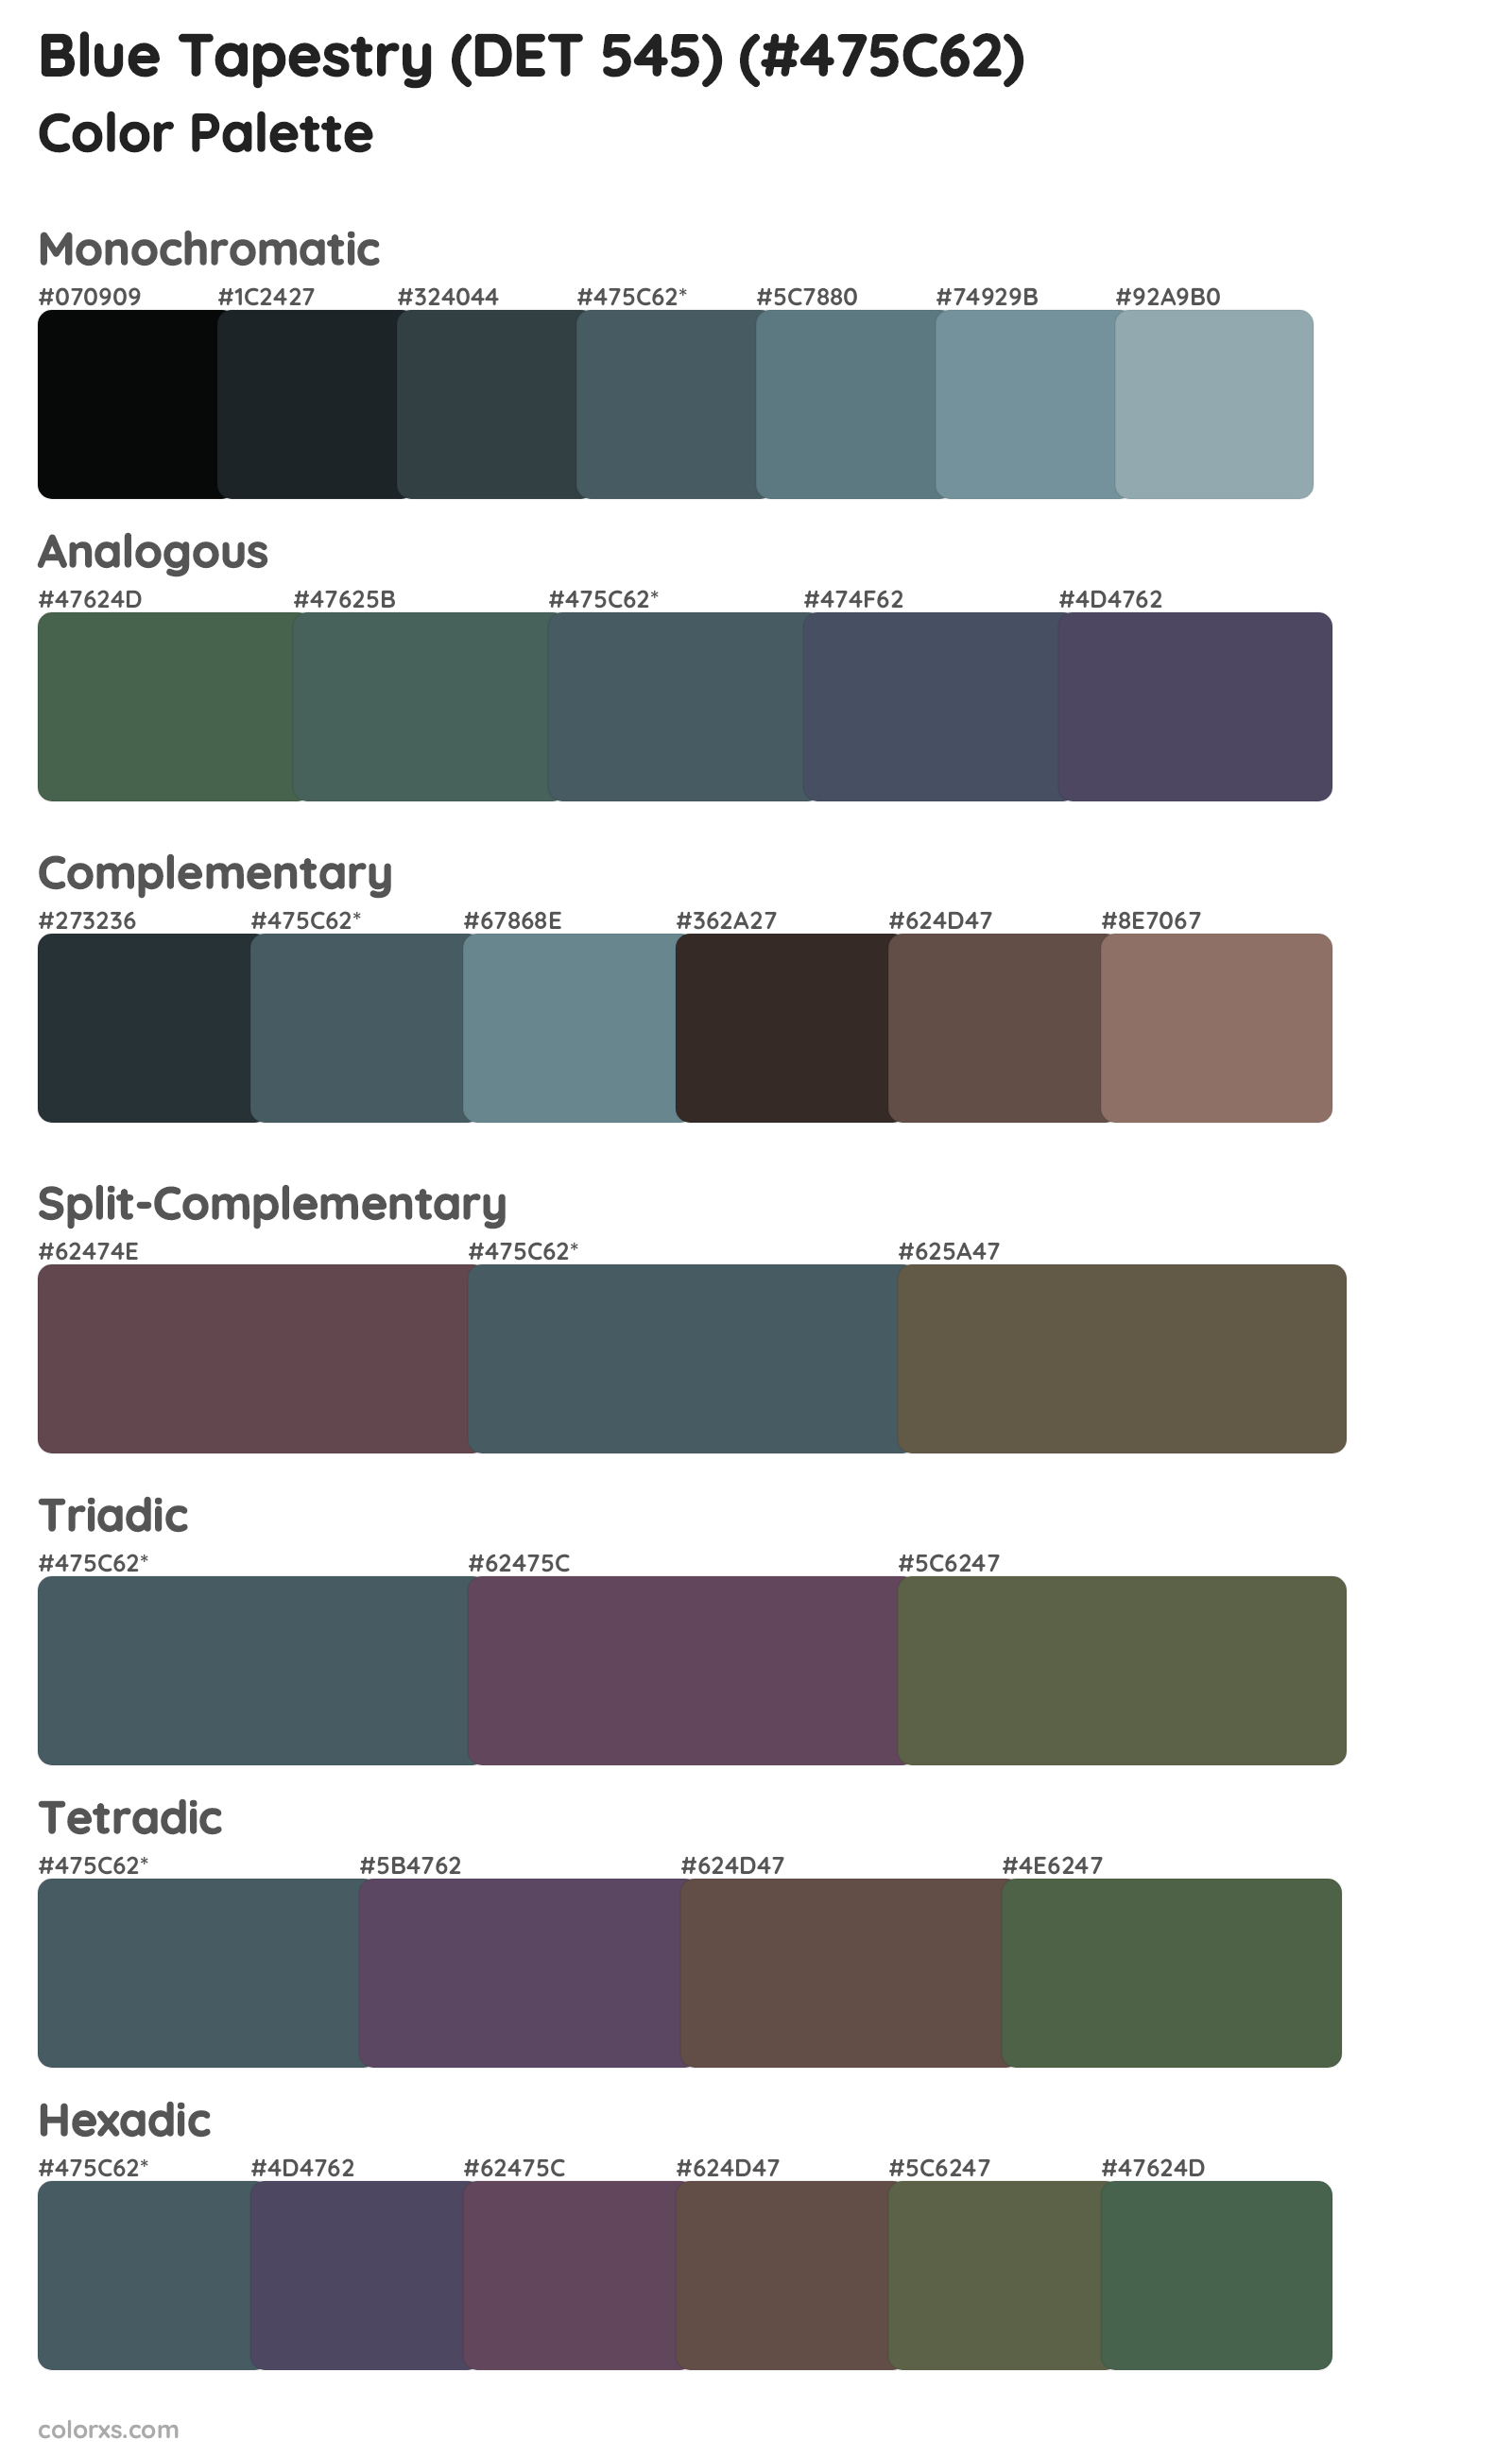 Blue Tapestry (DET 545) Color Scheme Palettes